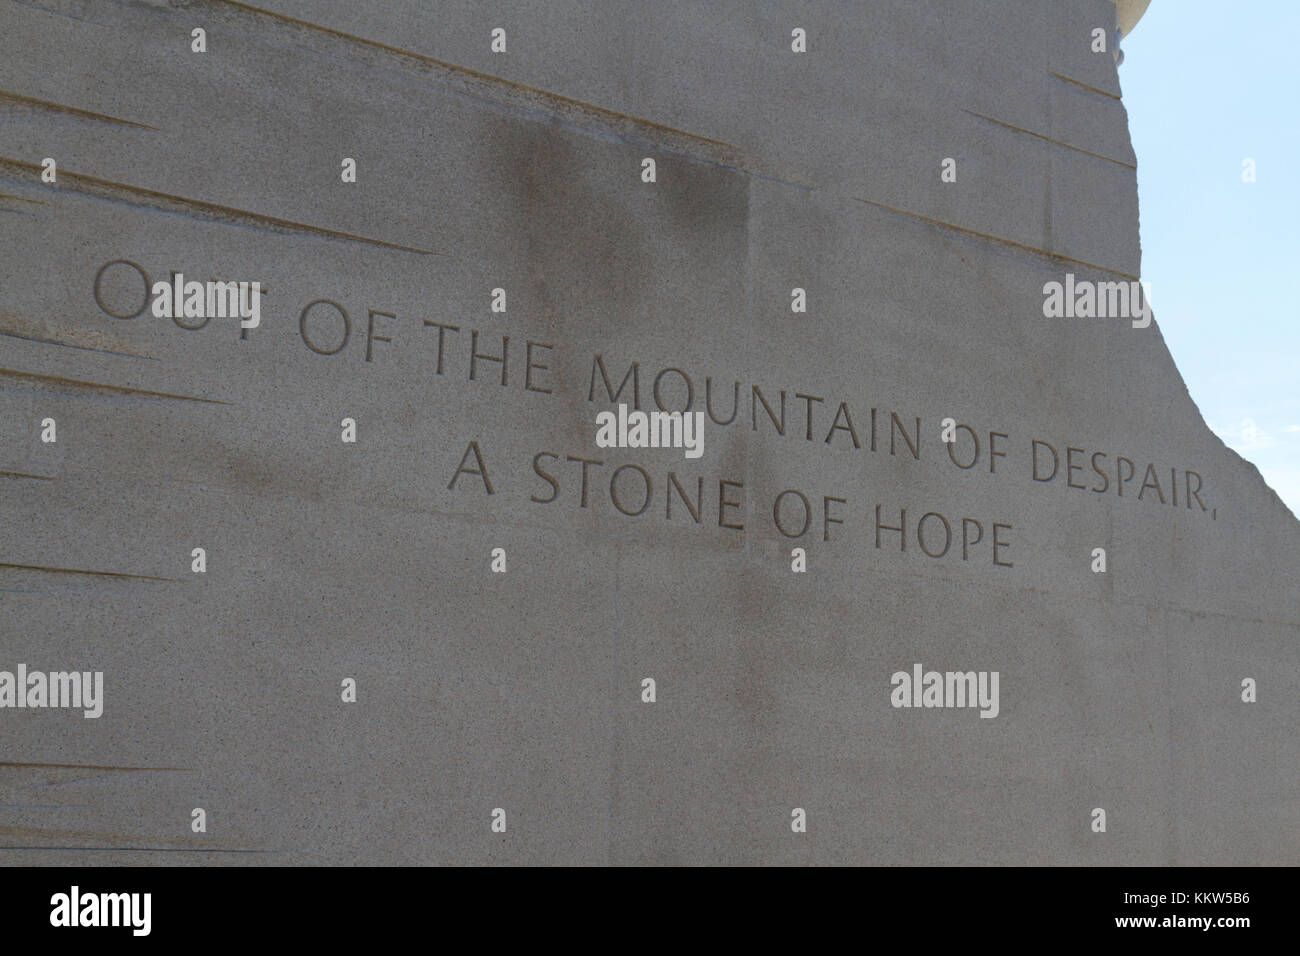 "Aus dem Berg der Verzweiflung einen Stein der Hoffnung", Inschrift auf Teil des Martin Luther King Jr. Memorial, Washington DC, USA. Stockfoto